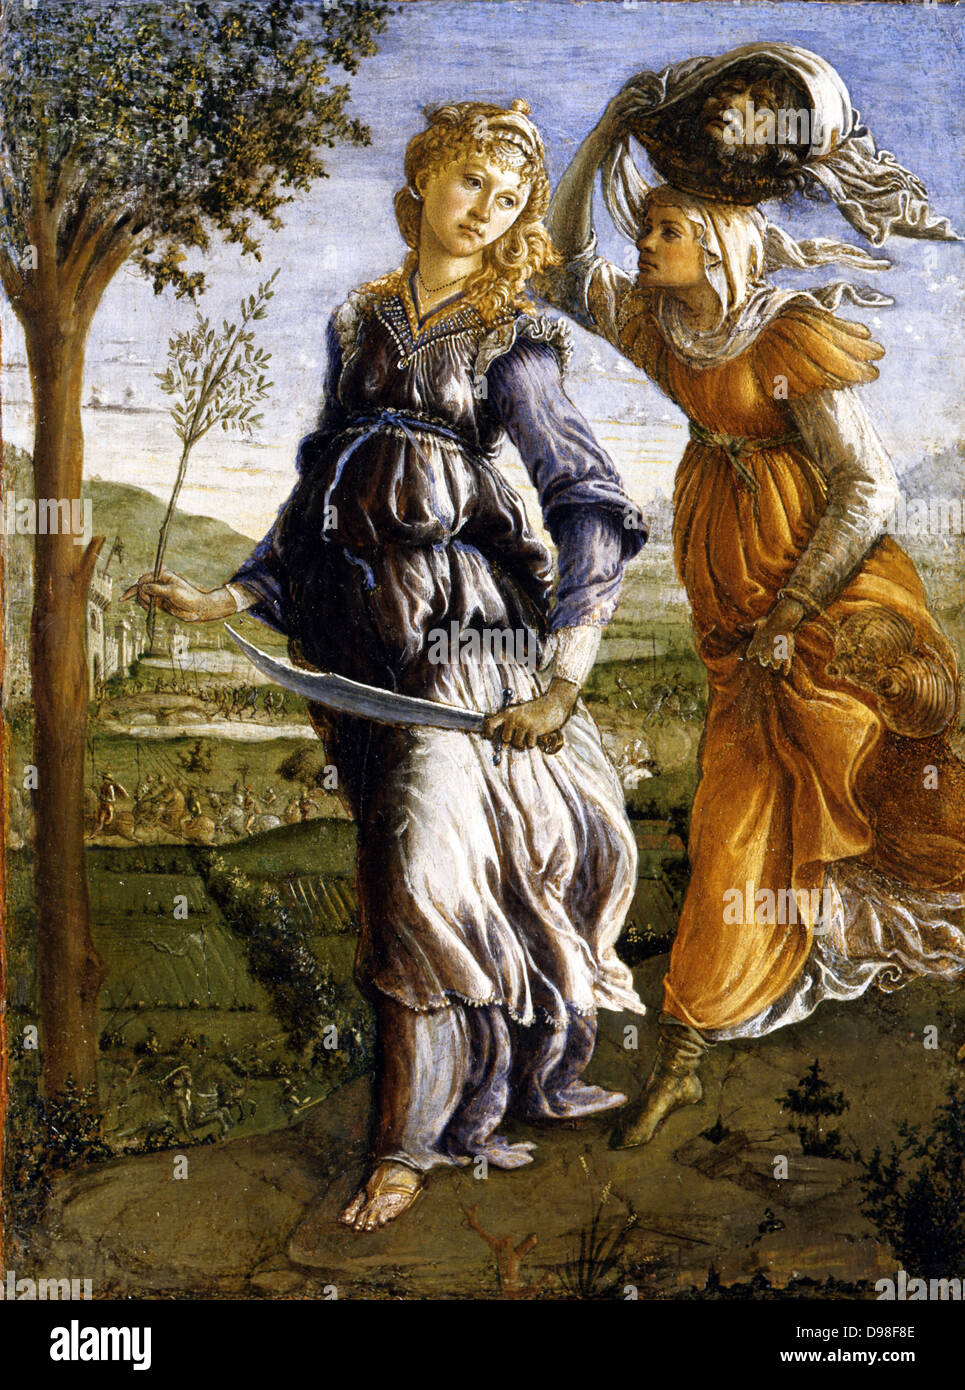 Sandro Botticelli, 1445 - 1510), florentin, peintre italien. Il ritorno di Giuditta un Betulia (le retour de Judith à Betulia), 1470 Banque D'Images